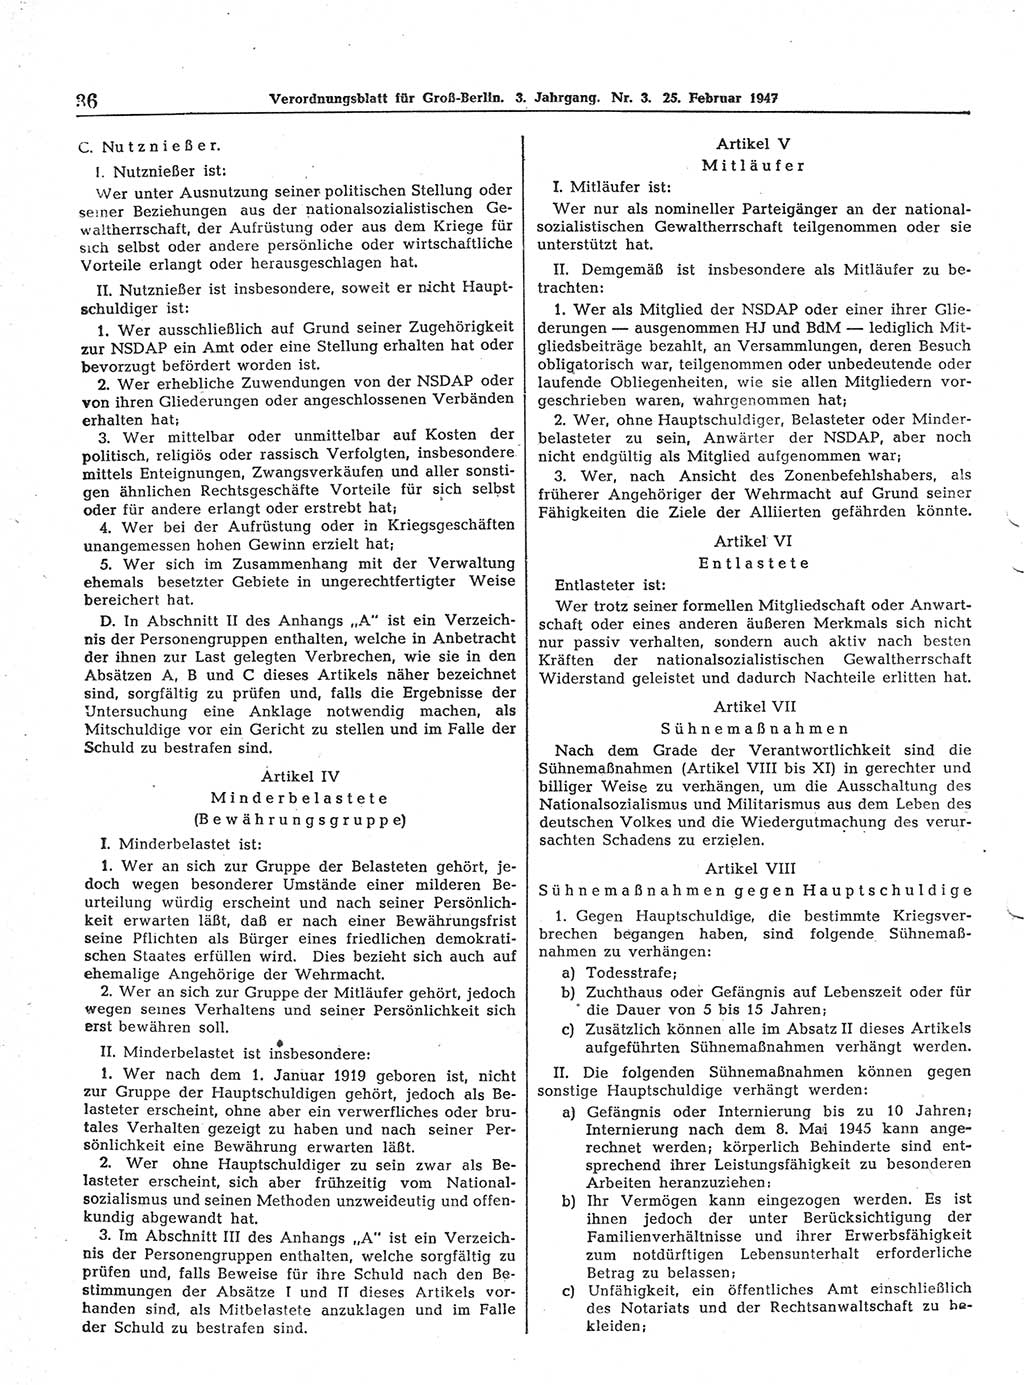 Verordnungsblatt (VOBl.) für Groß-Berlin 1947, Seite 36 (VOBl. Bln. 1947, S. 36)